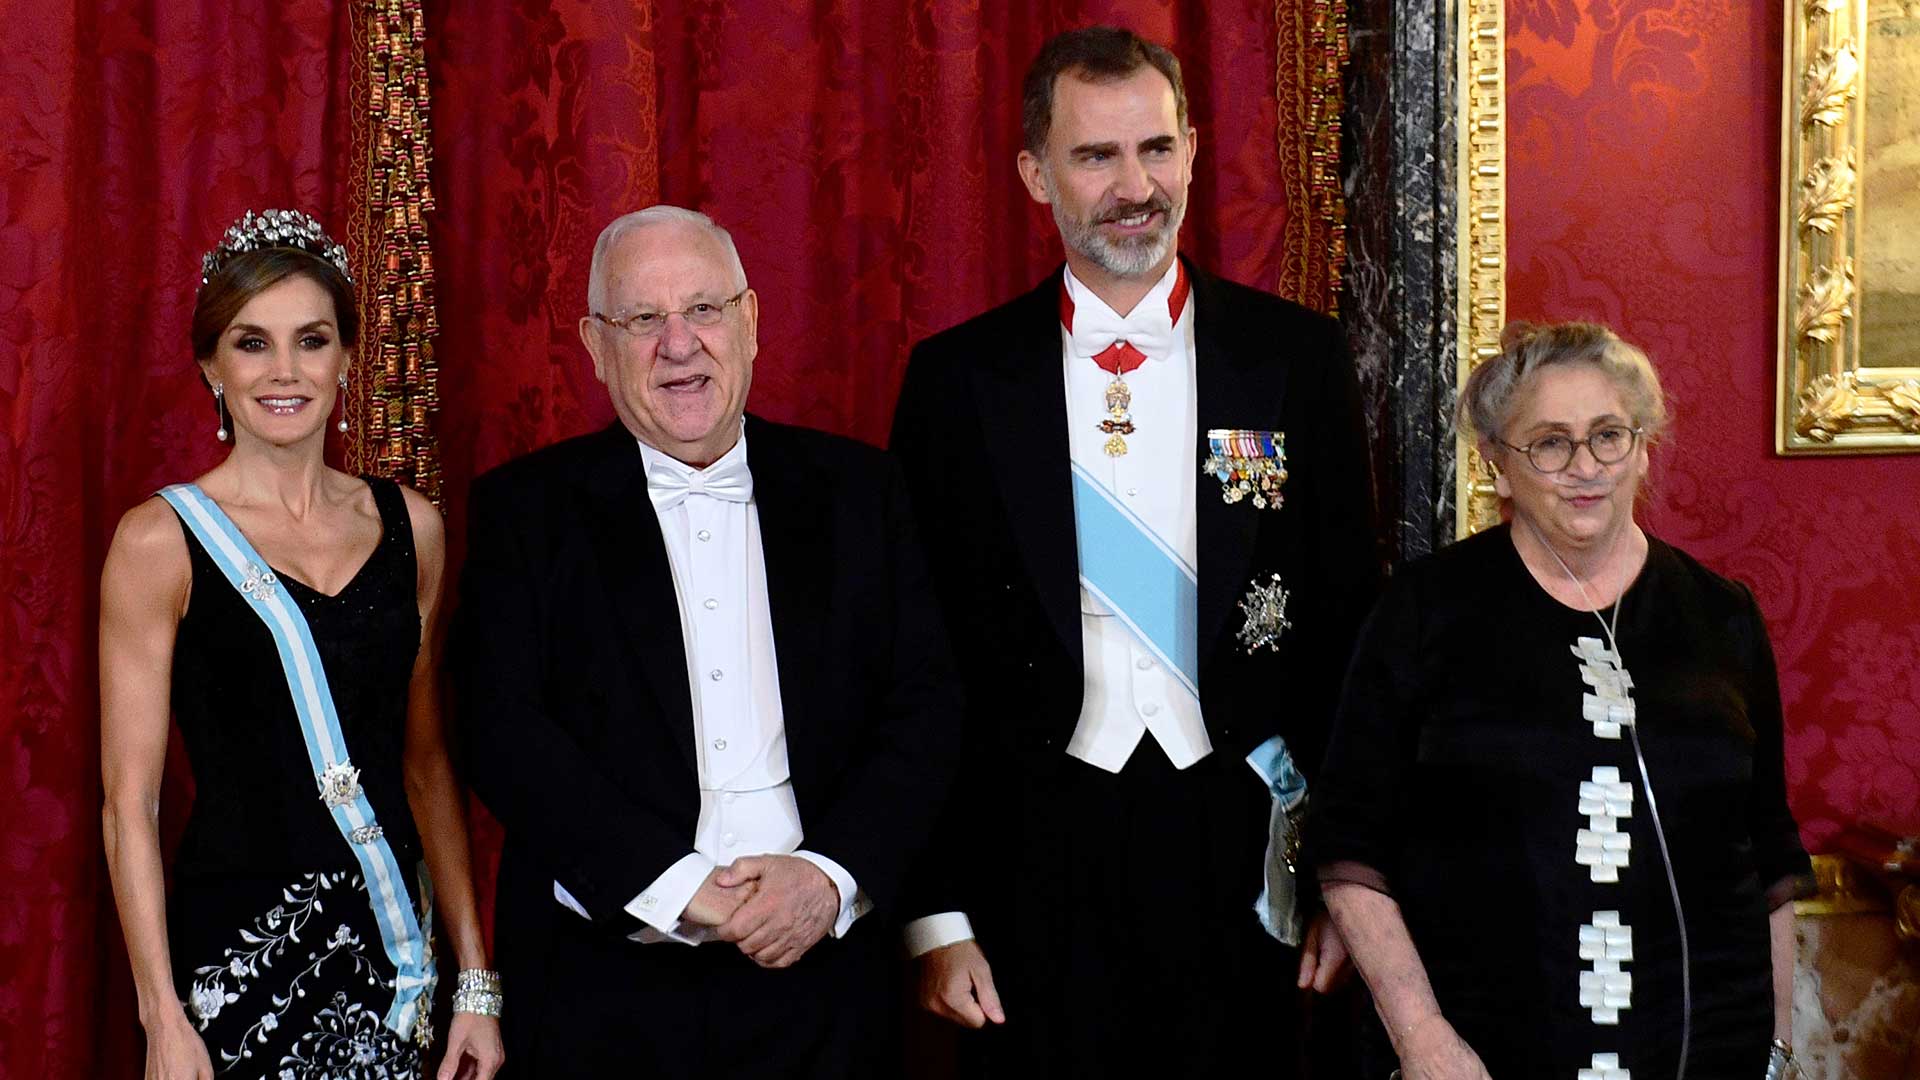 El presidente de Israel dice que Felipe VI es “el símbolo de la unidad” de España